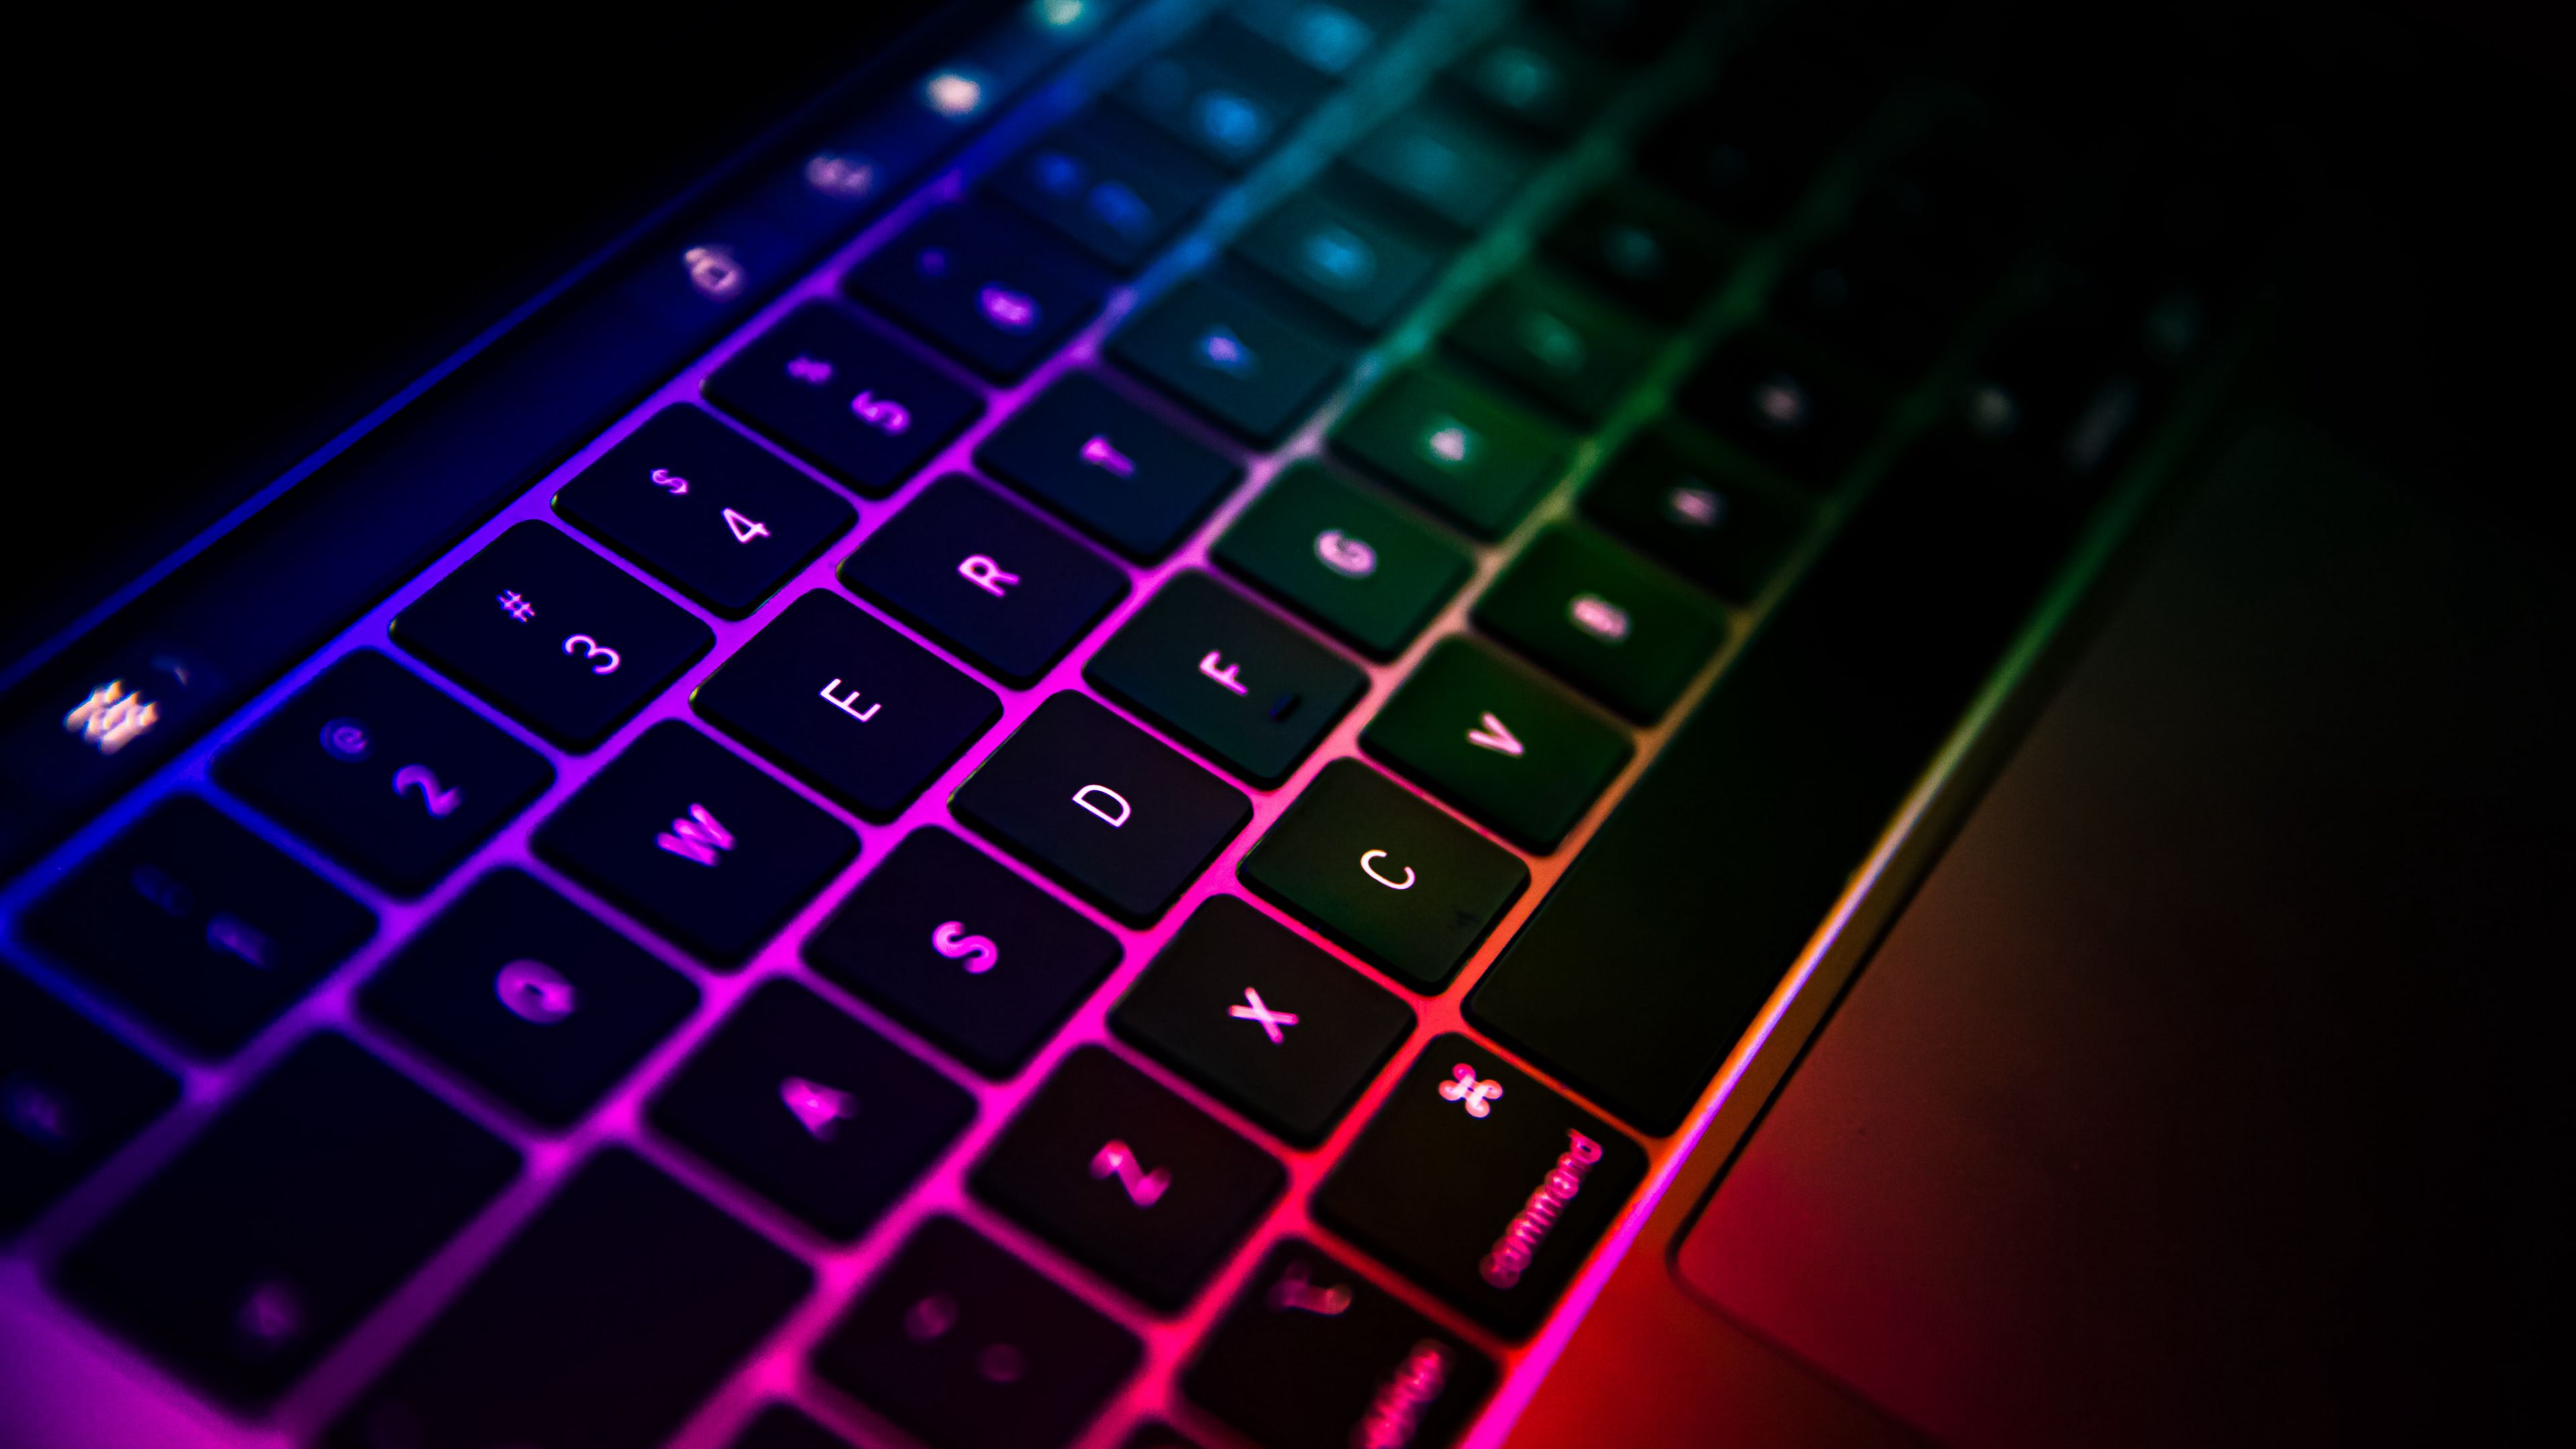 Tải ngay hình nền bàn phím đa sắc độ phân giải cao 3840x2160 để làm đẹp màn hình máy tính hay laptop của bạn. Với sắc màu đa dạng, hình nền sẽ giúp tạo ra không gian làm việc sáng tạo và tươi mới, giúp bạn làm việc hiệu quả hơn.